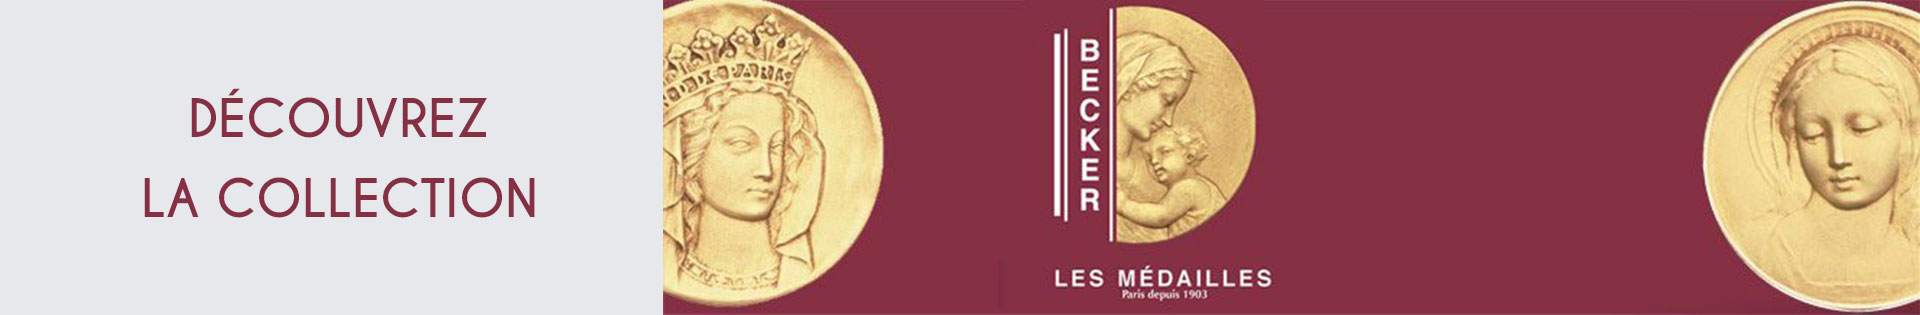 Médaille et symbole - Or jaune - Becker